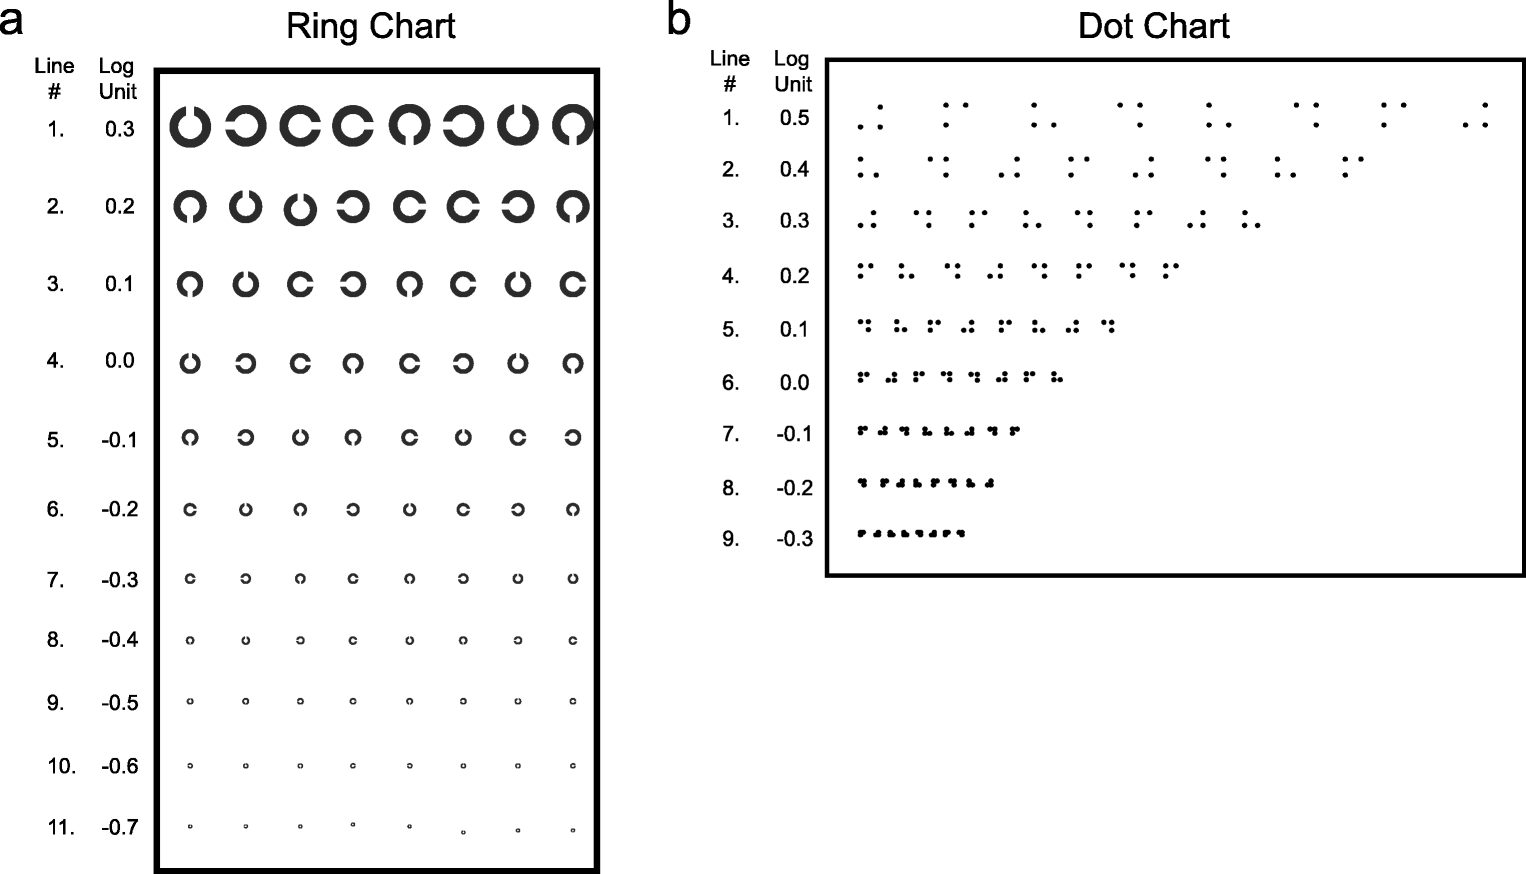 Fingertip Units Chart